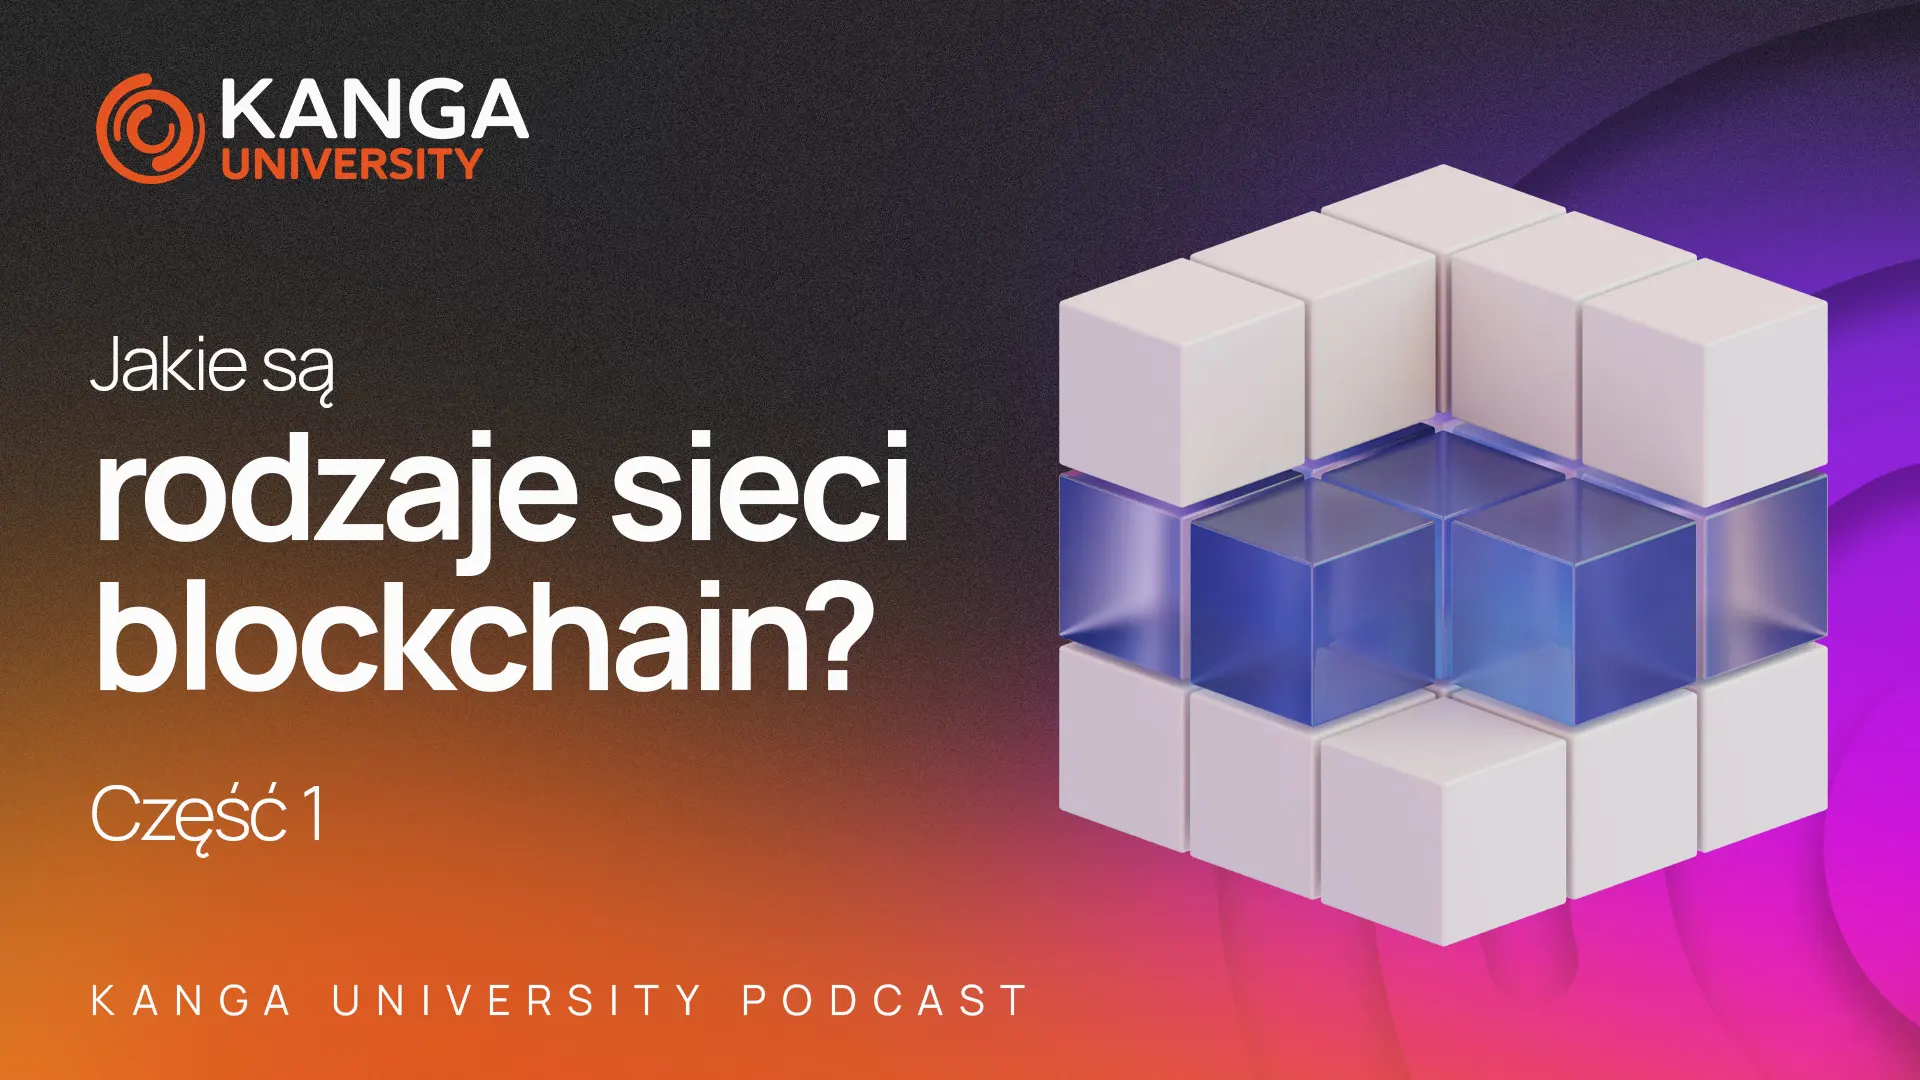 Kanga University Podcast #22 | Jakie są rodzaje sieci blockchain? | Część I